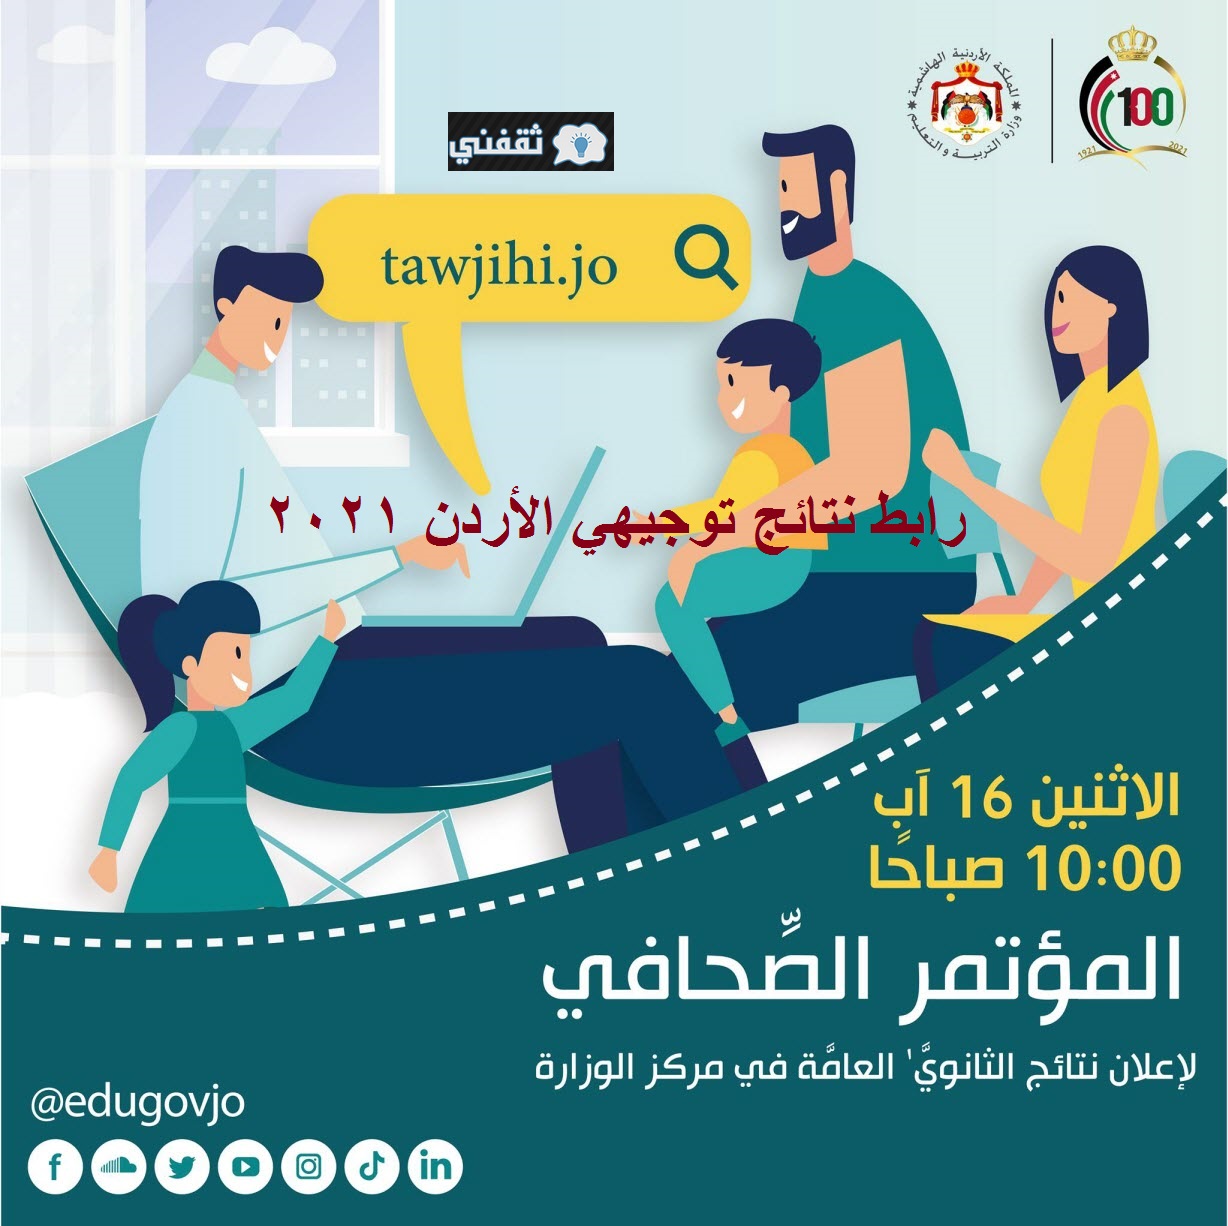 رابط نتائج توجيهي الأردن 2021 وزارة التربية نتائج الثانوية العامة بنسبة نجاح 60.1% عبر موقع tawjihi.jo